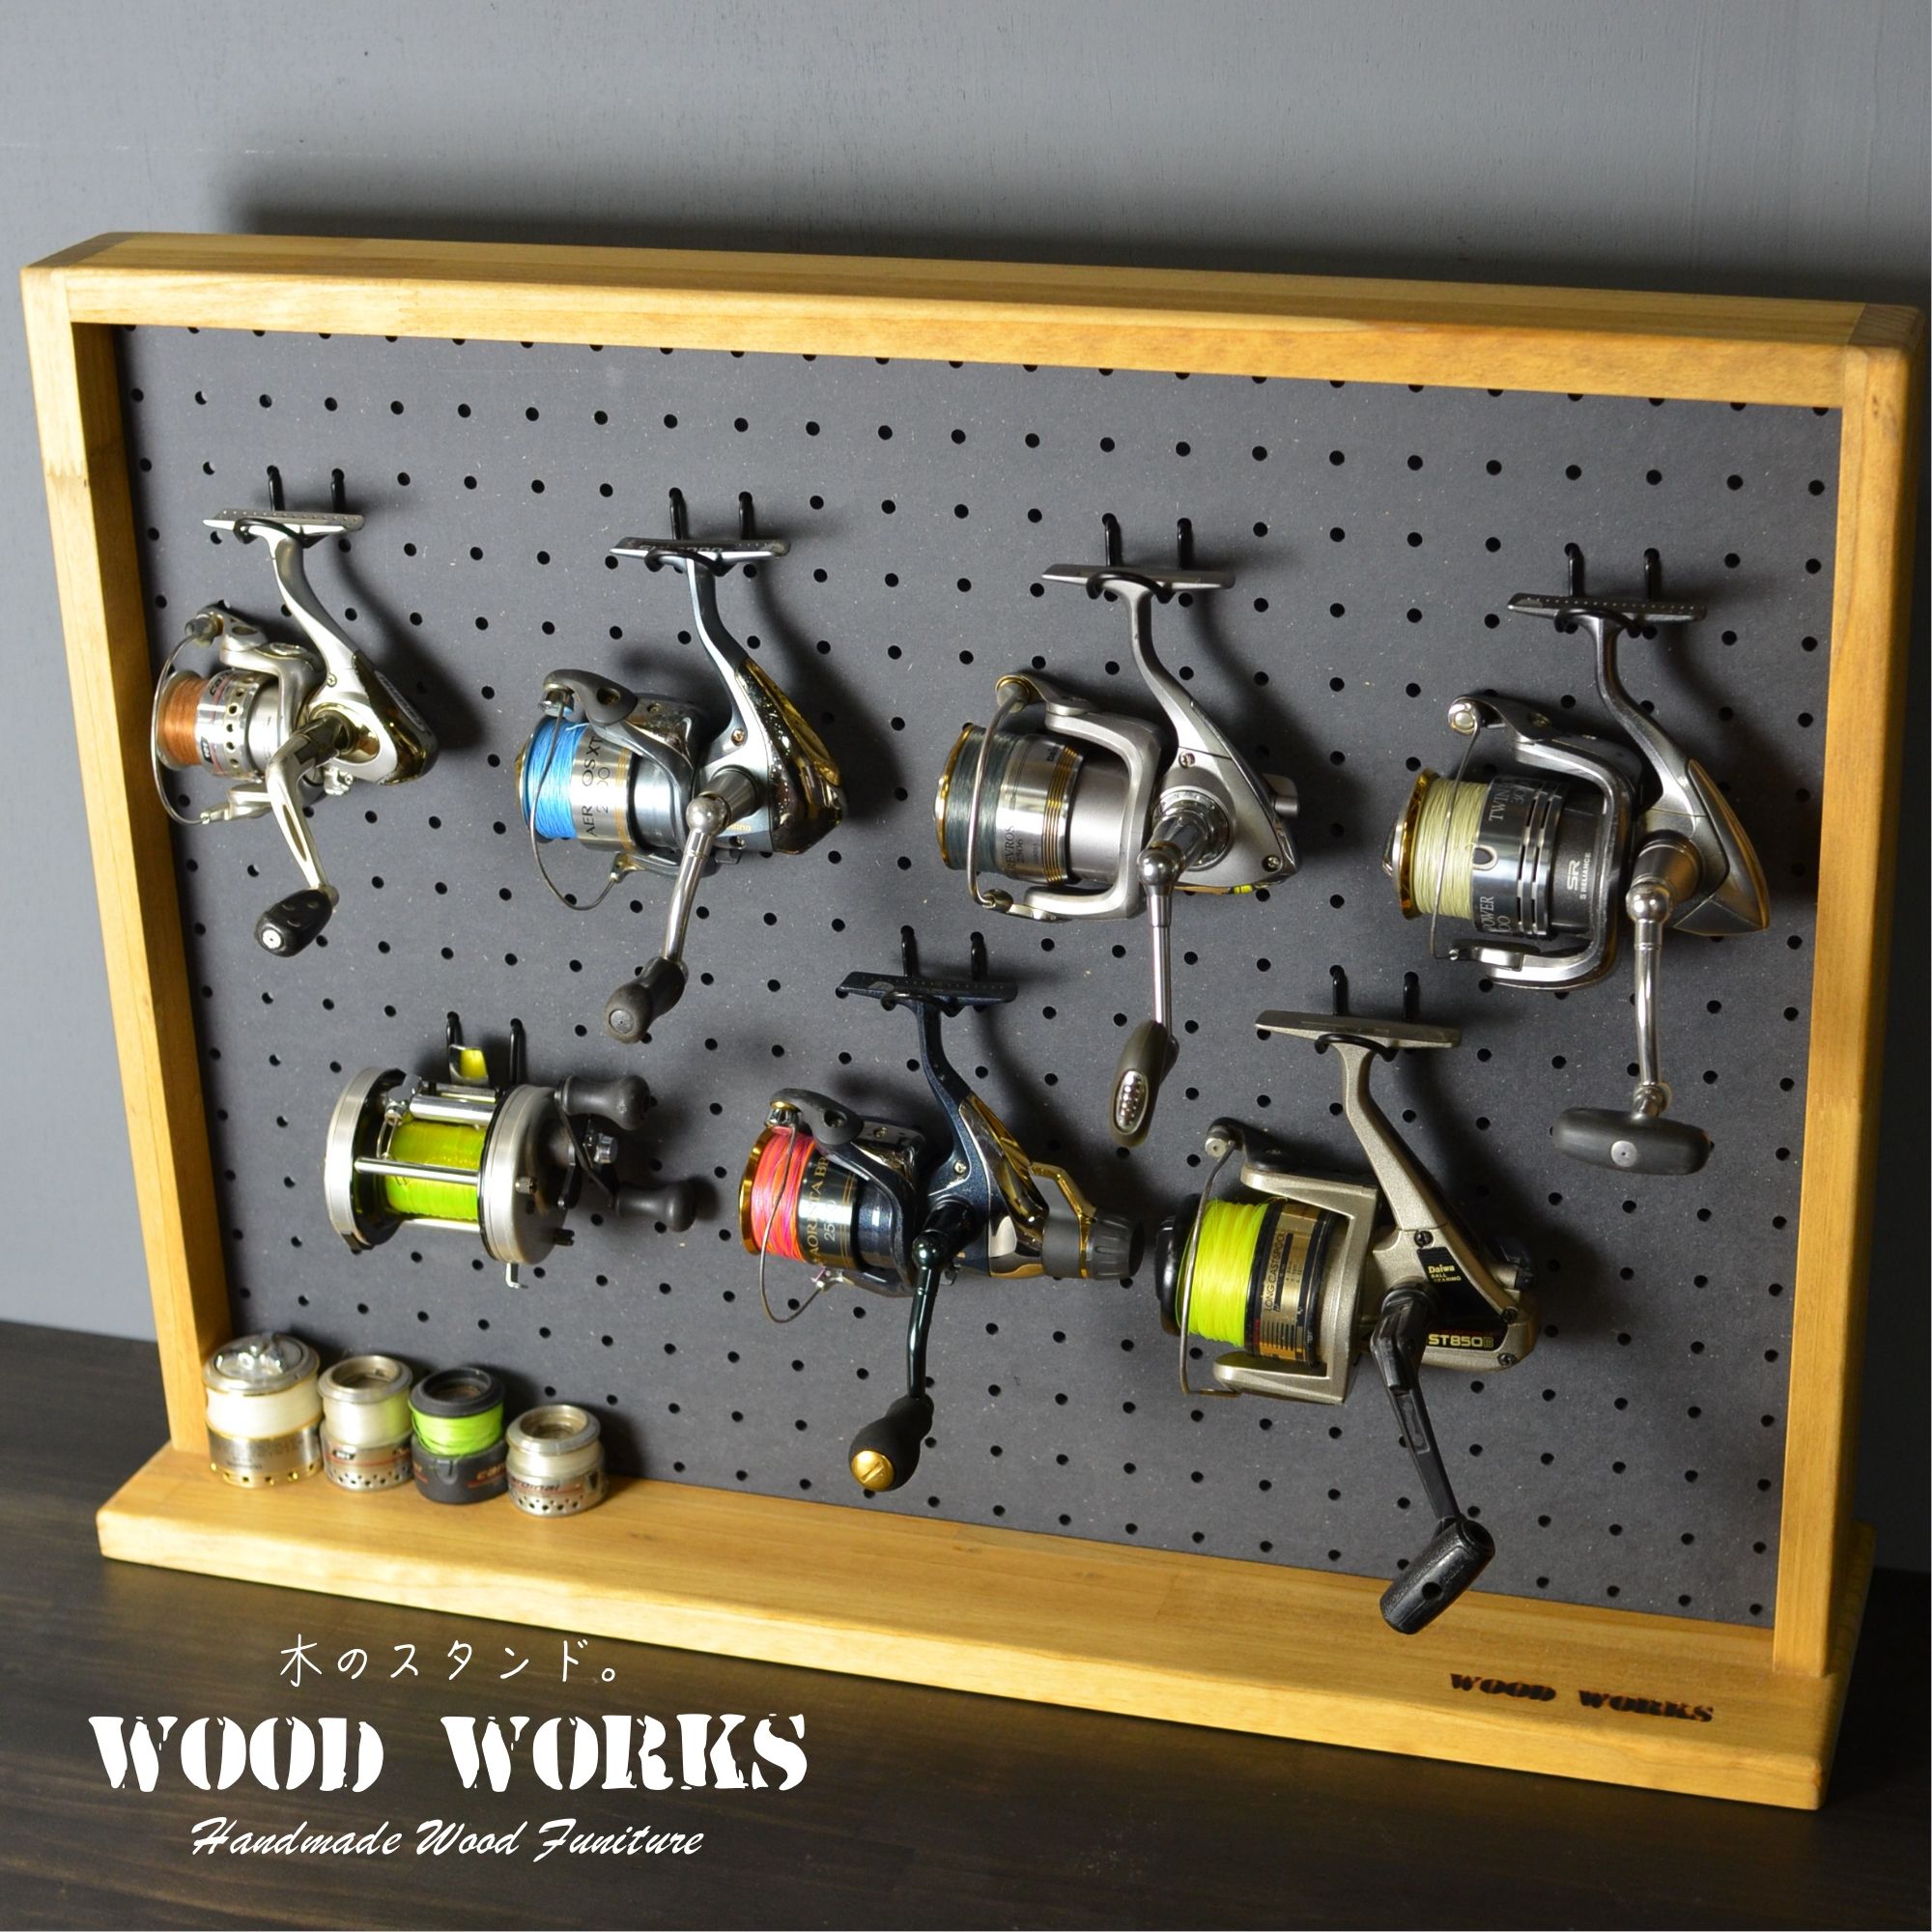 WOOD WORKS 日本製 有孔ボード ディスプレイラック Mサイズ 【ライトブラウン】 ペグボード ・ルアーやリール 釣り具の収納 ・ガンラックとしてのディスプレイに ・アクセサリー収納 ・ハンド…